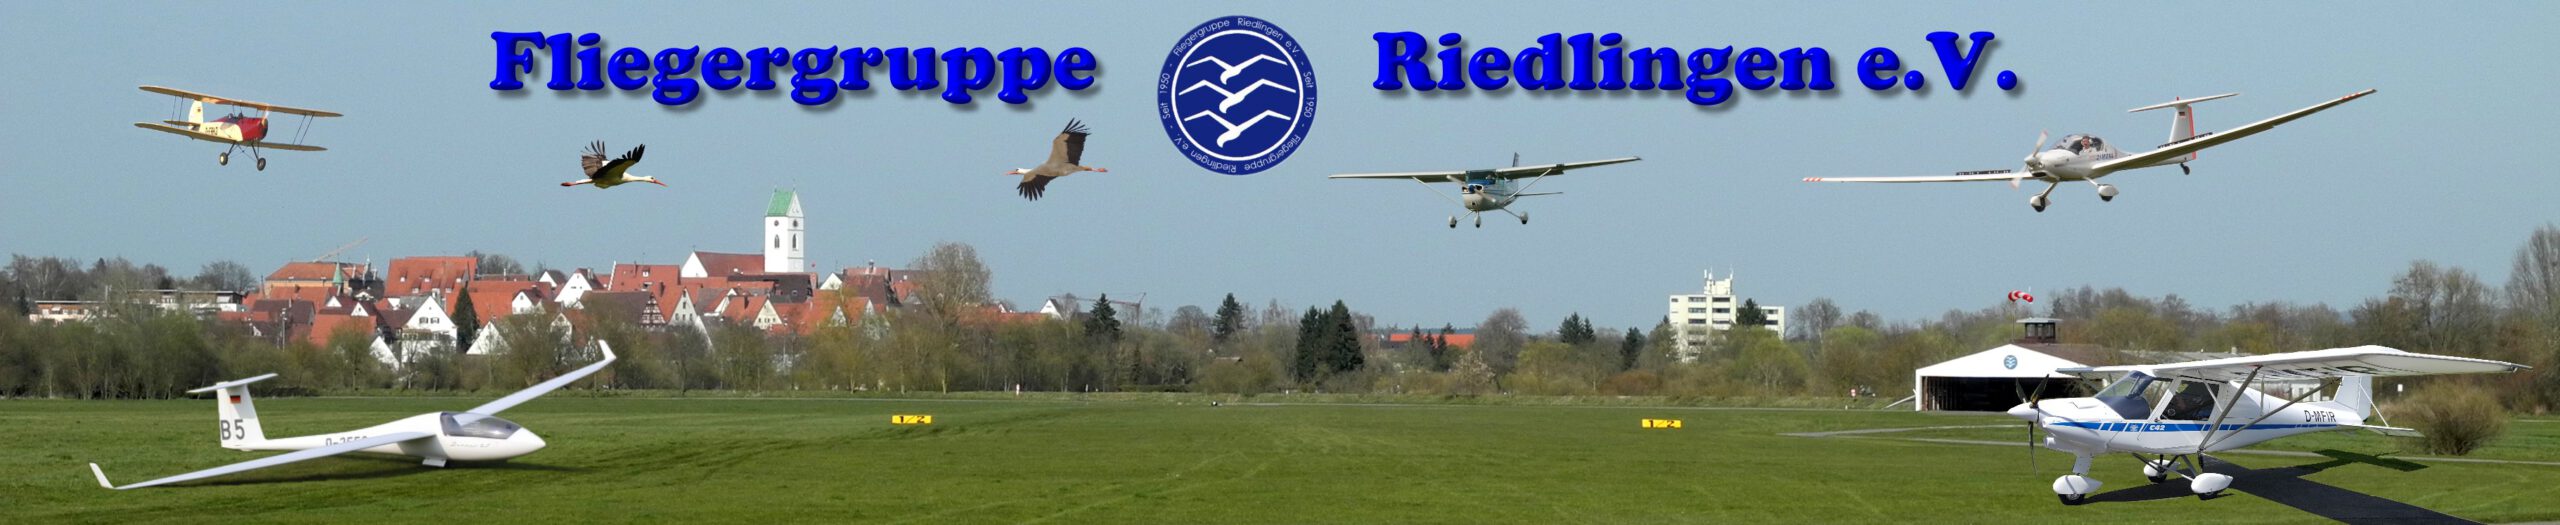 Fliegergruppe Riedlingen e.V.